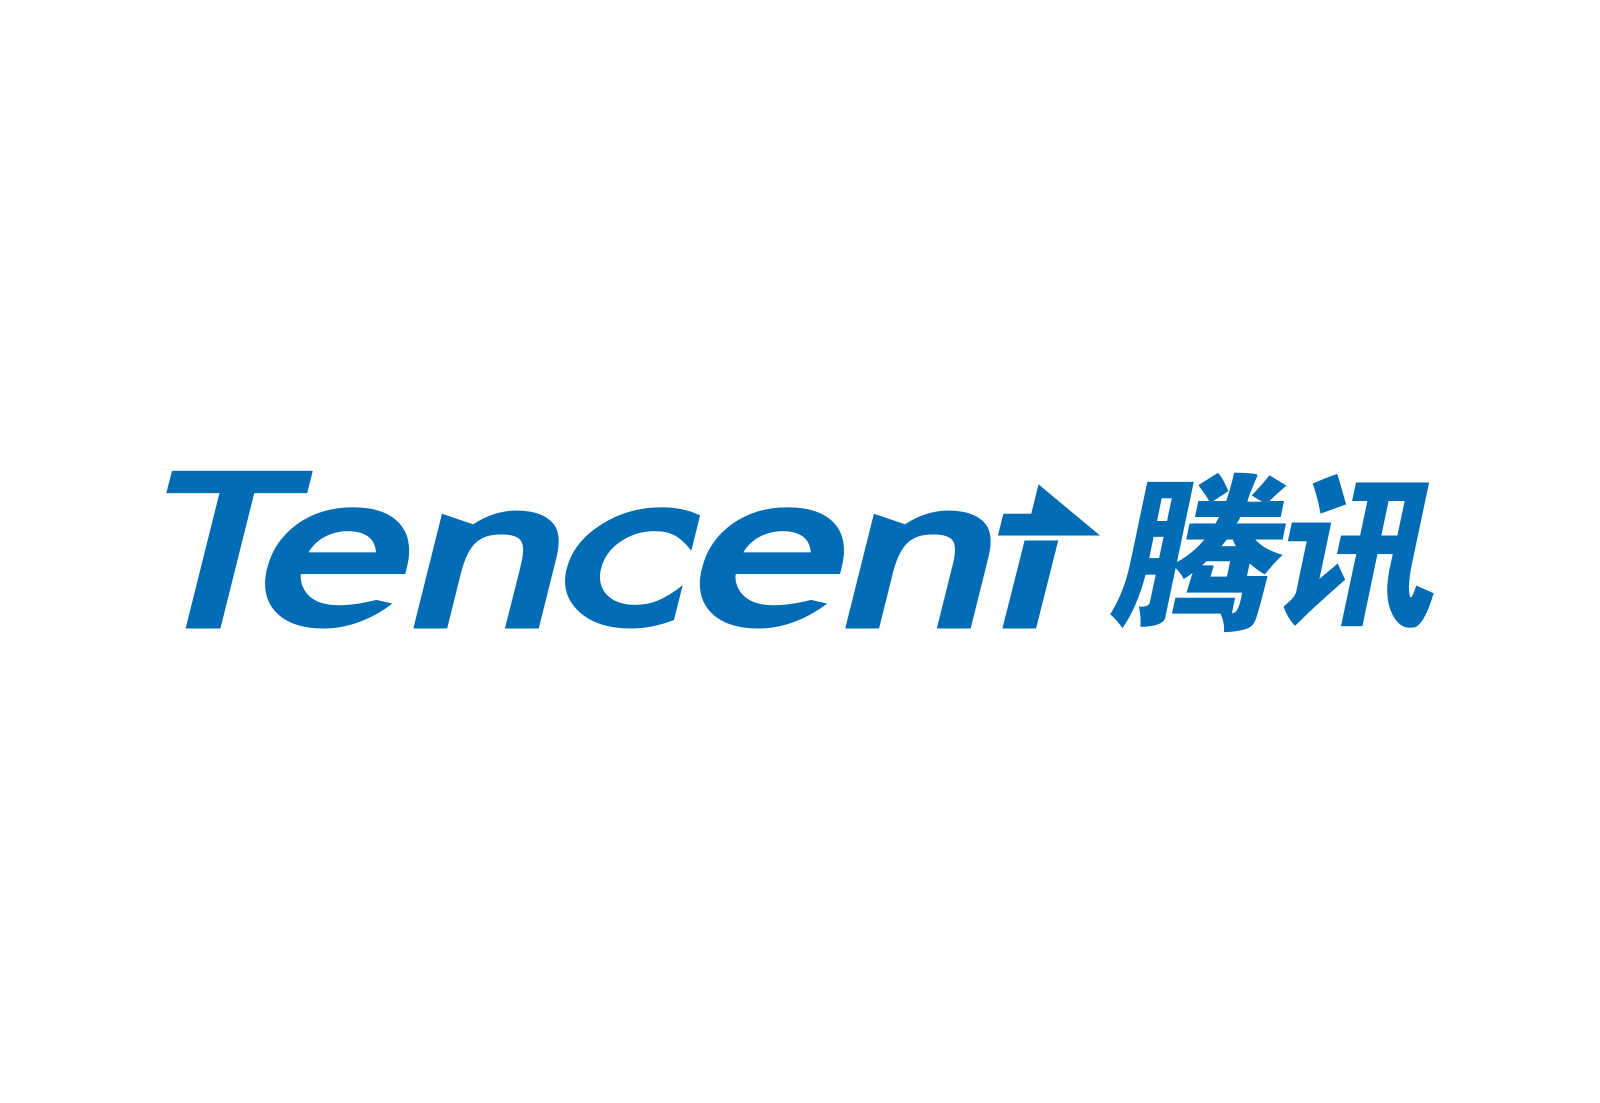 Tencent / QQ Music